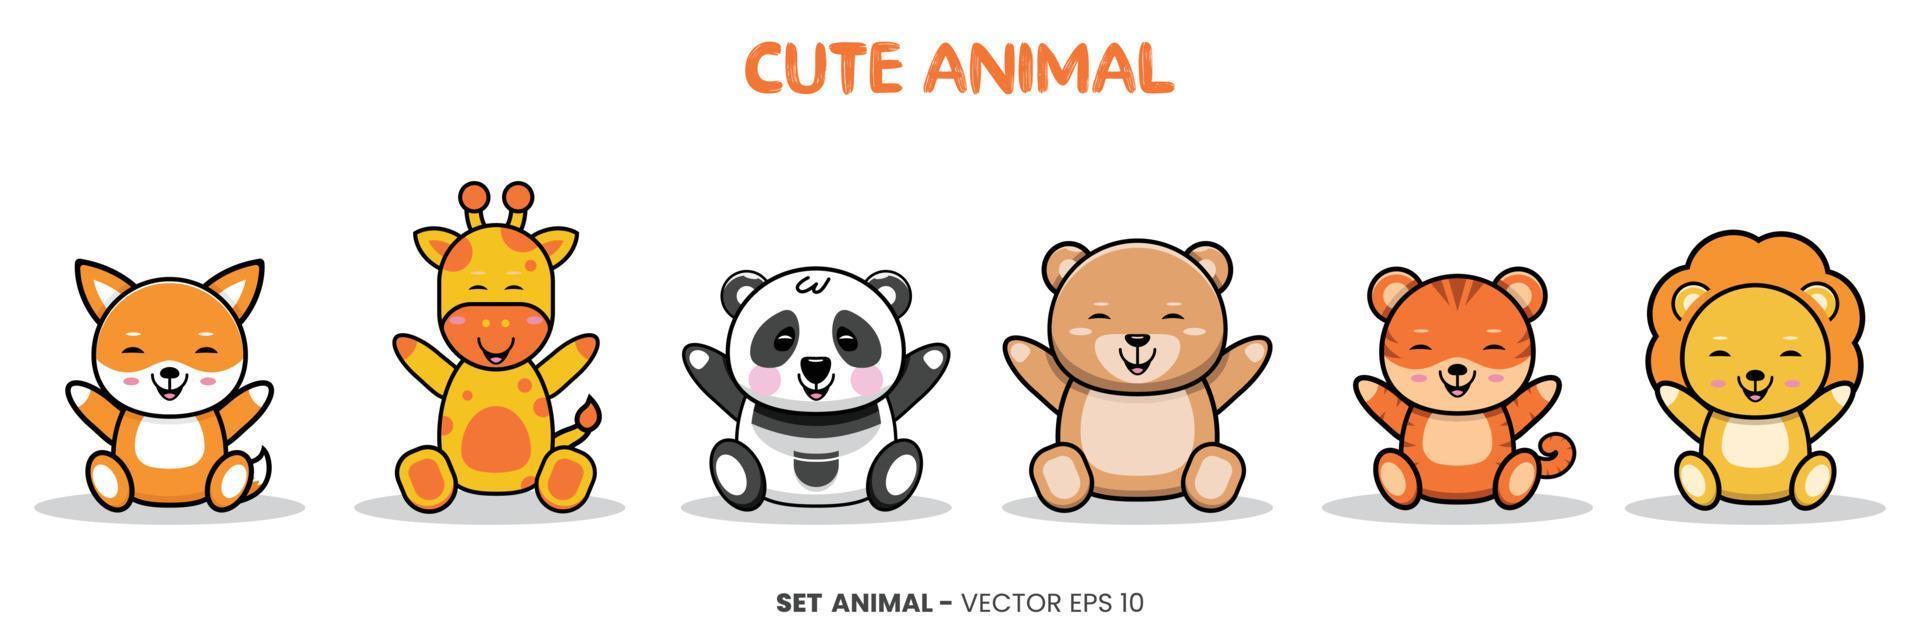 illustration sur le thème des enfants avec des personnages animaux mignons - girafe, panda, ours, tigre, lion et renard animal assis avec une expression heureuse et souriante. vecteur